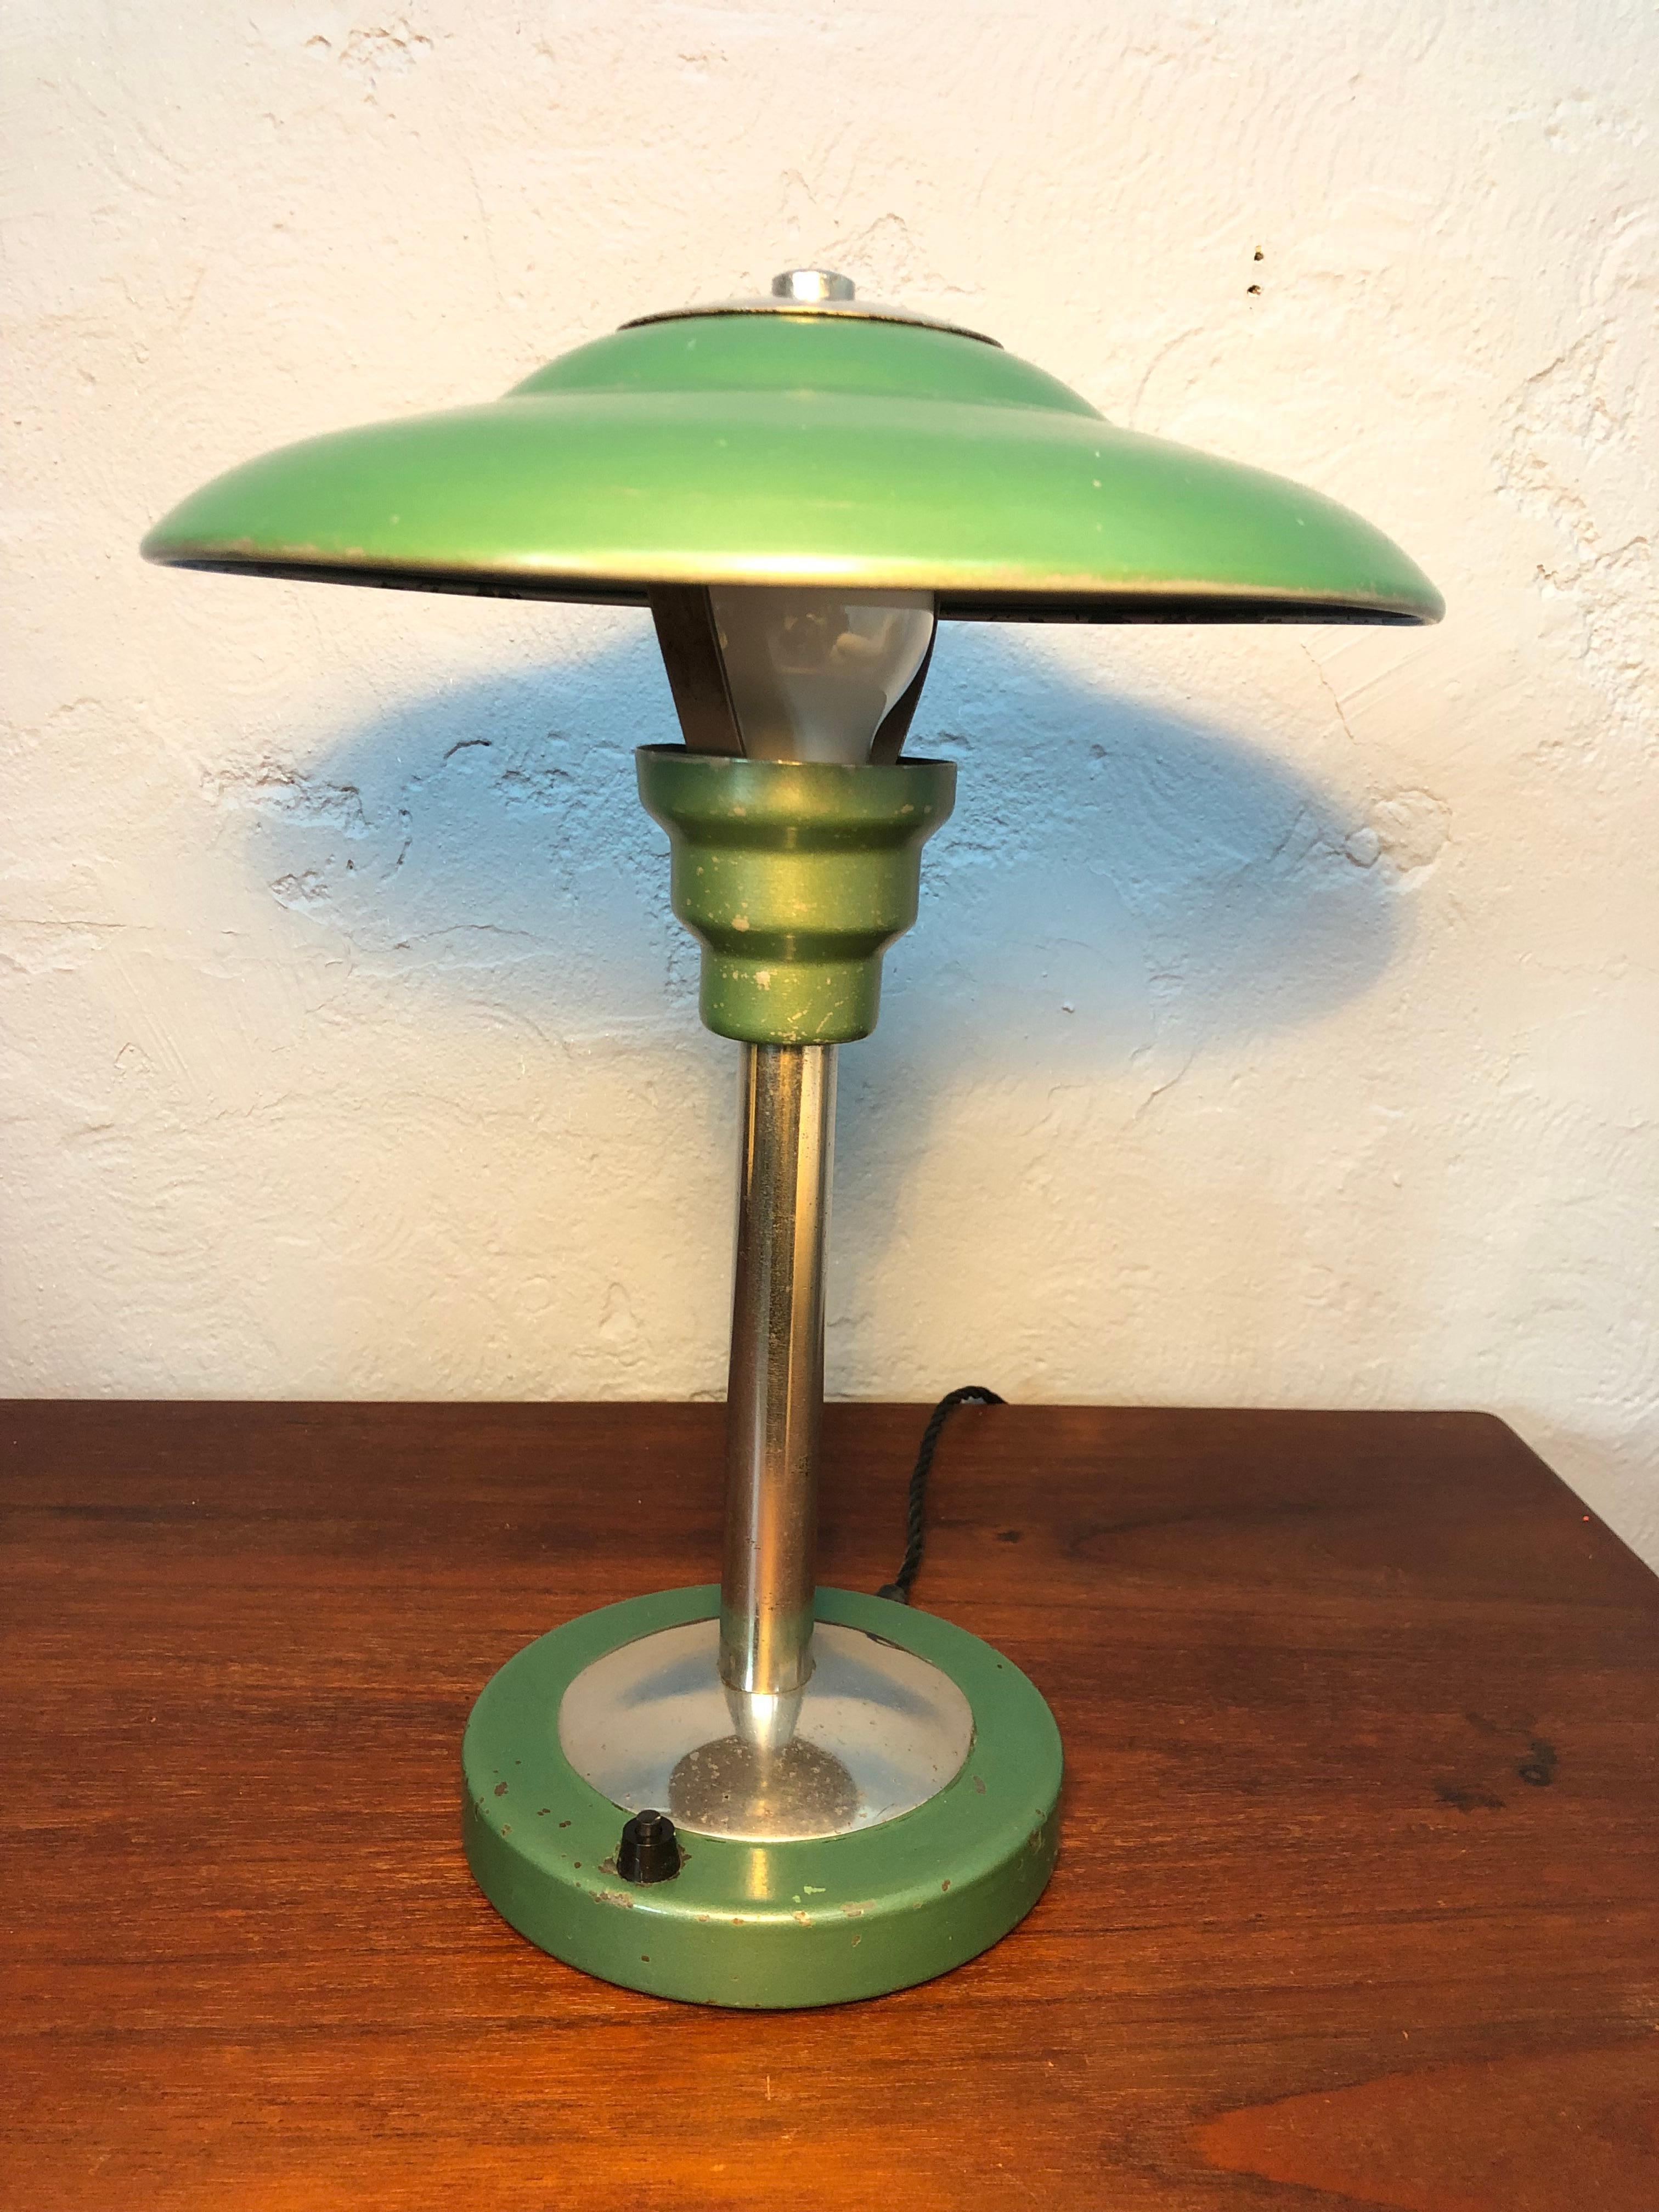 Eine Bauhaus-Tischleuchte nach dem Vorbild von Max Schumacher aus Deutschland. 
Diese klassische Bauhaus-Lampe ist in ihrer grünen Originalfarbe mit Gebrauchsspuren aus den rund 70 Jahren des Gebrauchs. 
Die Lampe wurde zerlegt, gereinigt und mit